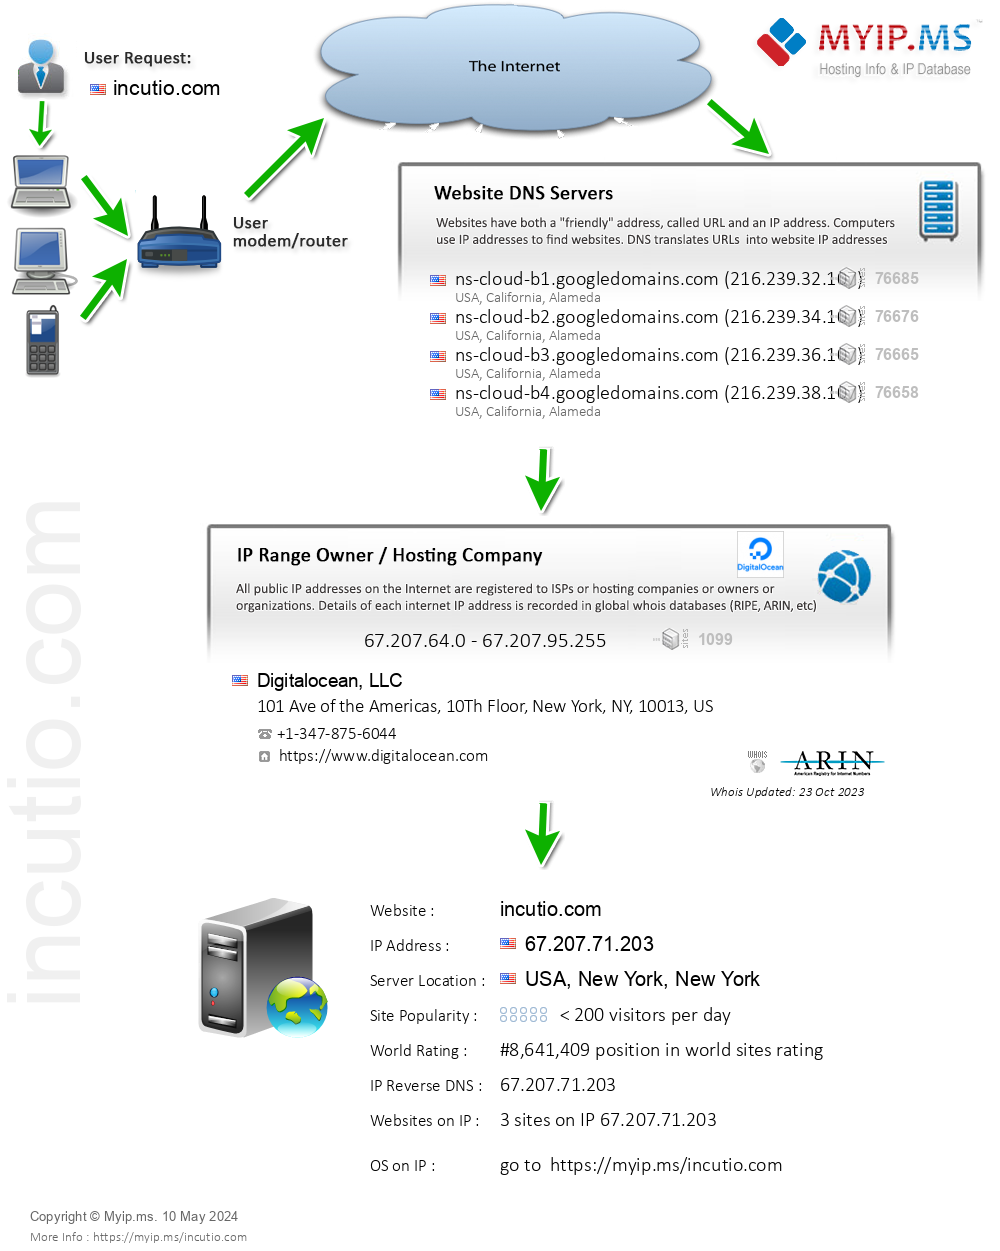 Incutio.com - Website Hosting Visual IP Diagram